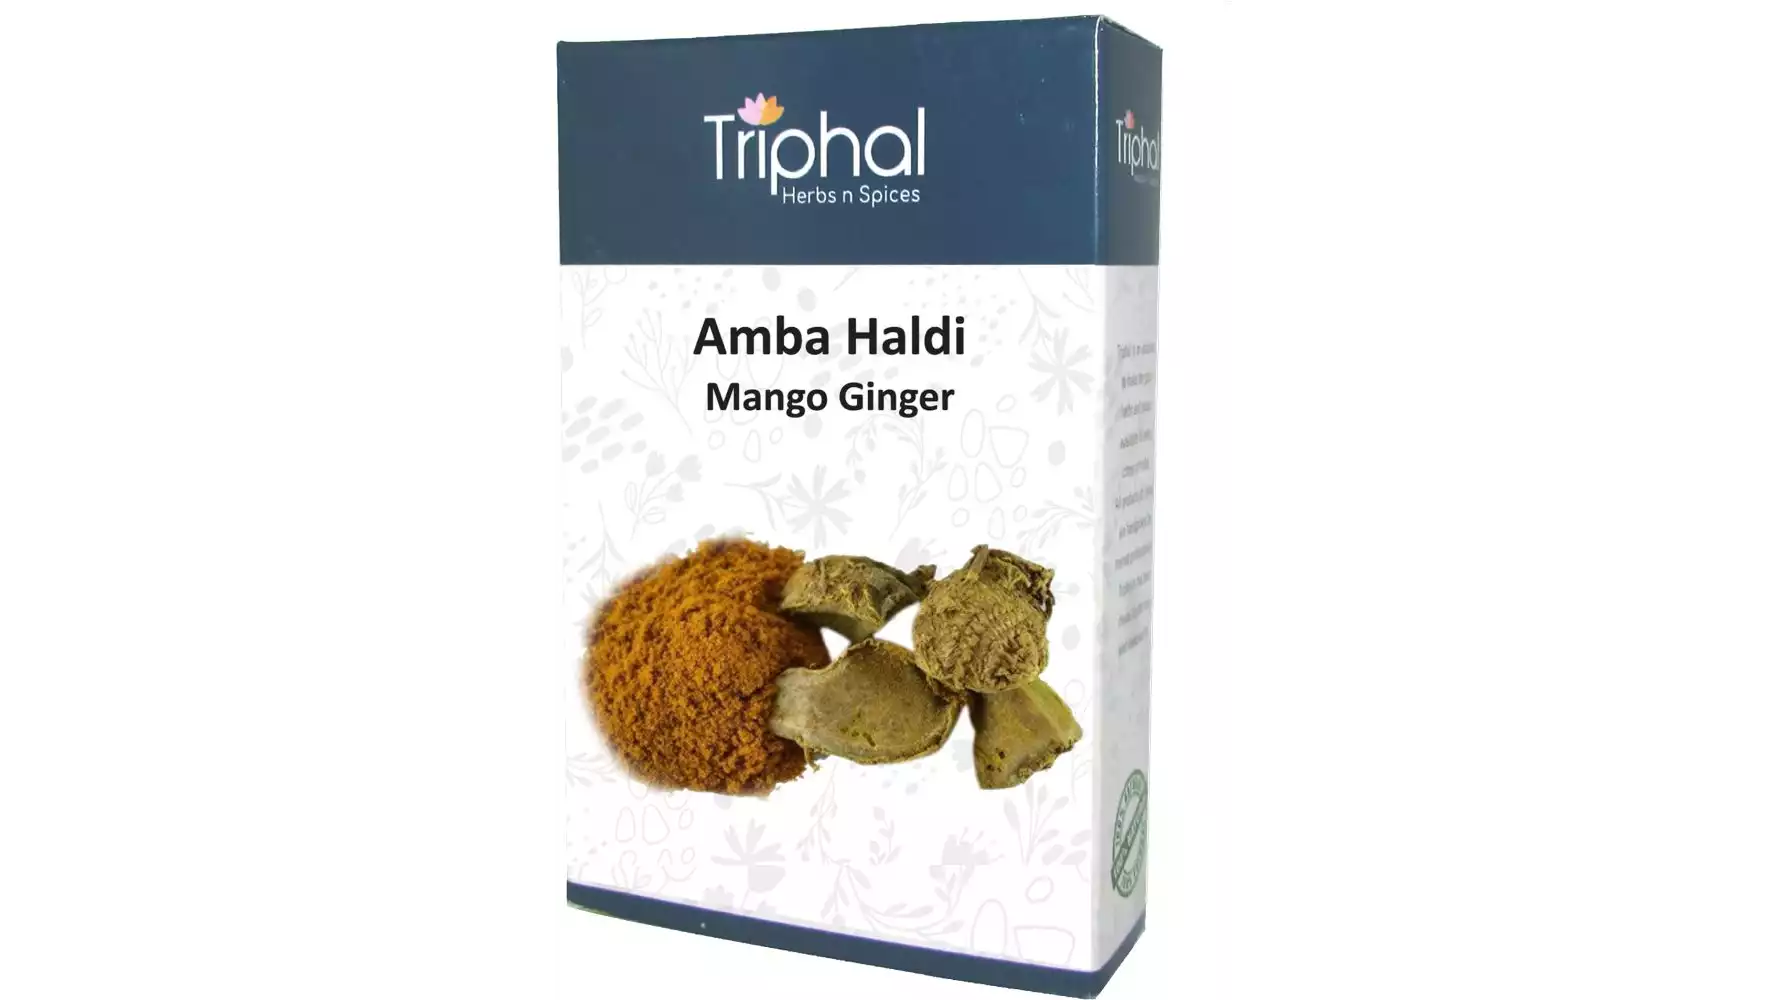 Triphal Raw Amba Haldi Mango Ginger (100g)